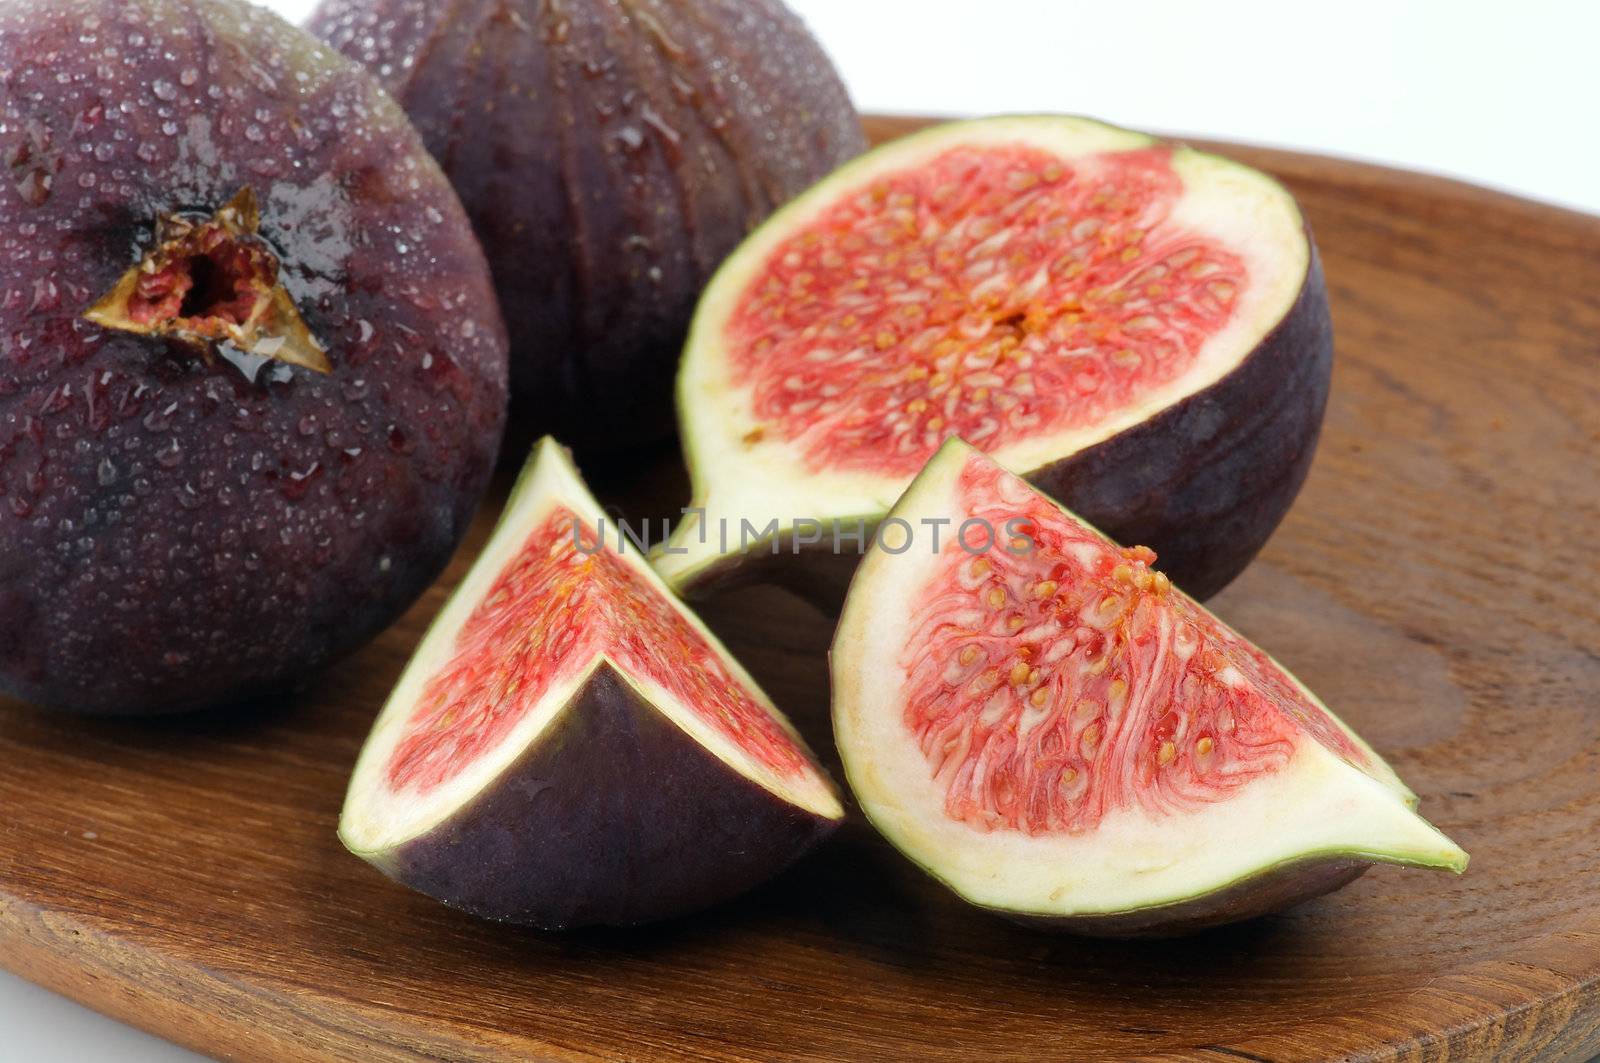 Figs on Wooden Plate by zhekos